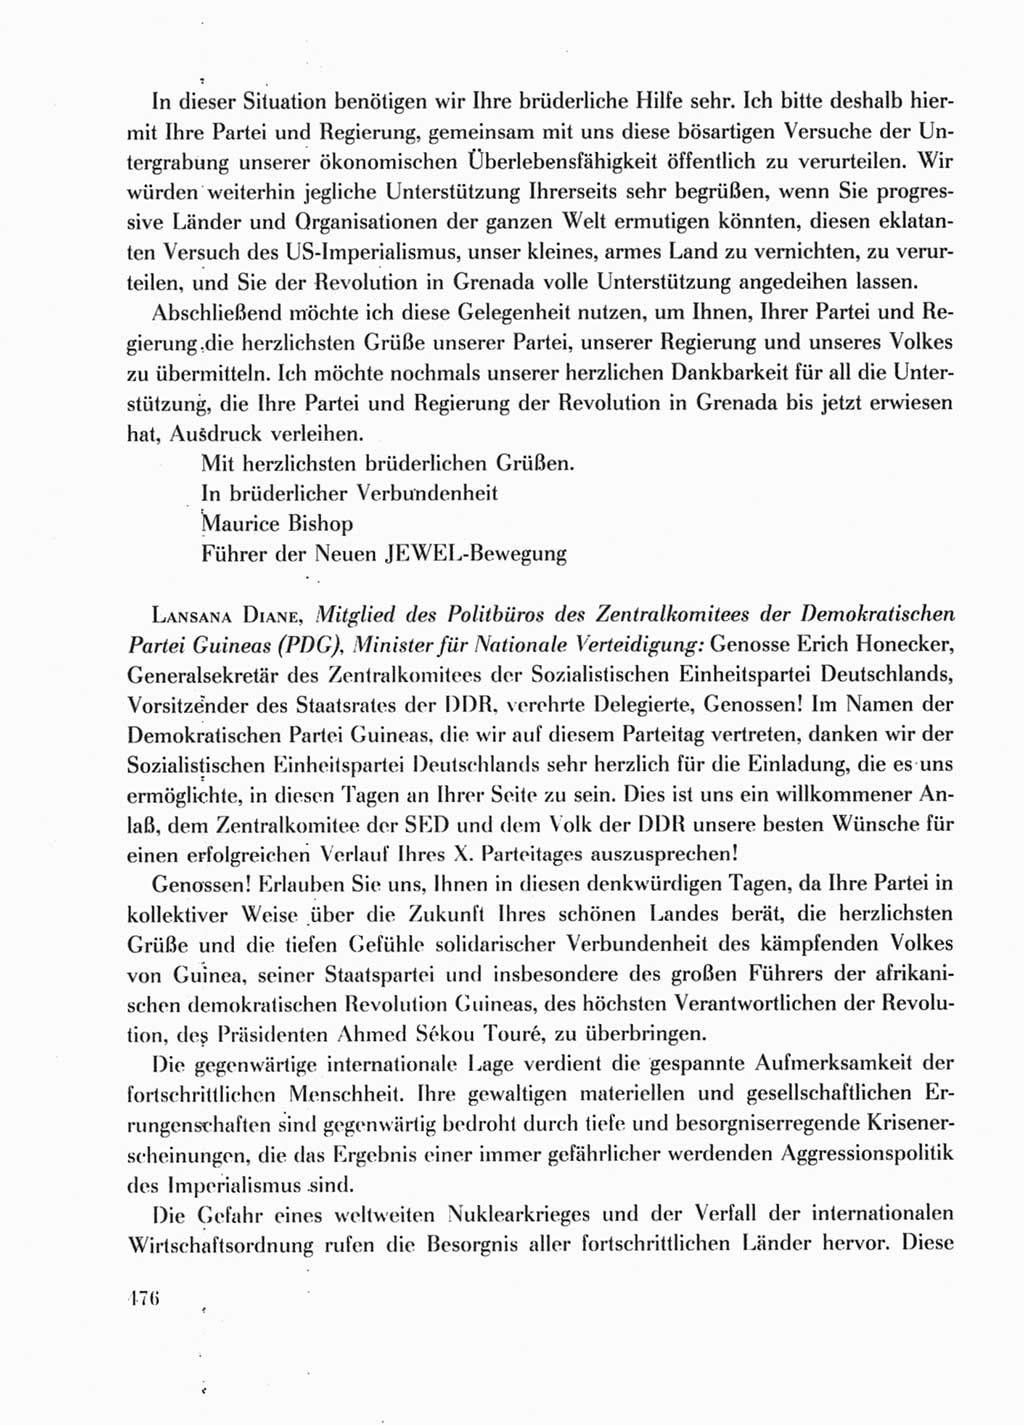 Protokoll der Verhandlungen des Ⅹ. Parteitages der Sozialistischen Einheitspartei Deutschlands (SED) [Deutsche Demokratische Republik (DDR)] 1981, Band 1, Seite 476 (Prot. Verh. Ⅹ. PT SED DDR 1981, Bd. 1, S. 476)